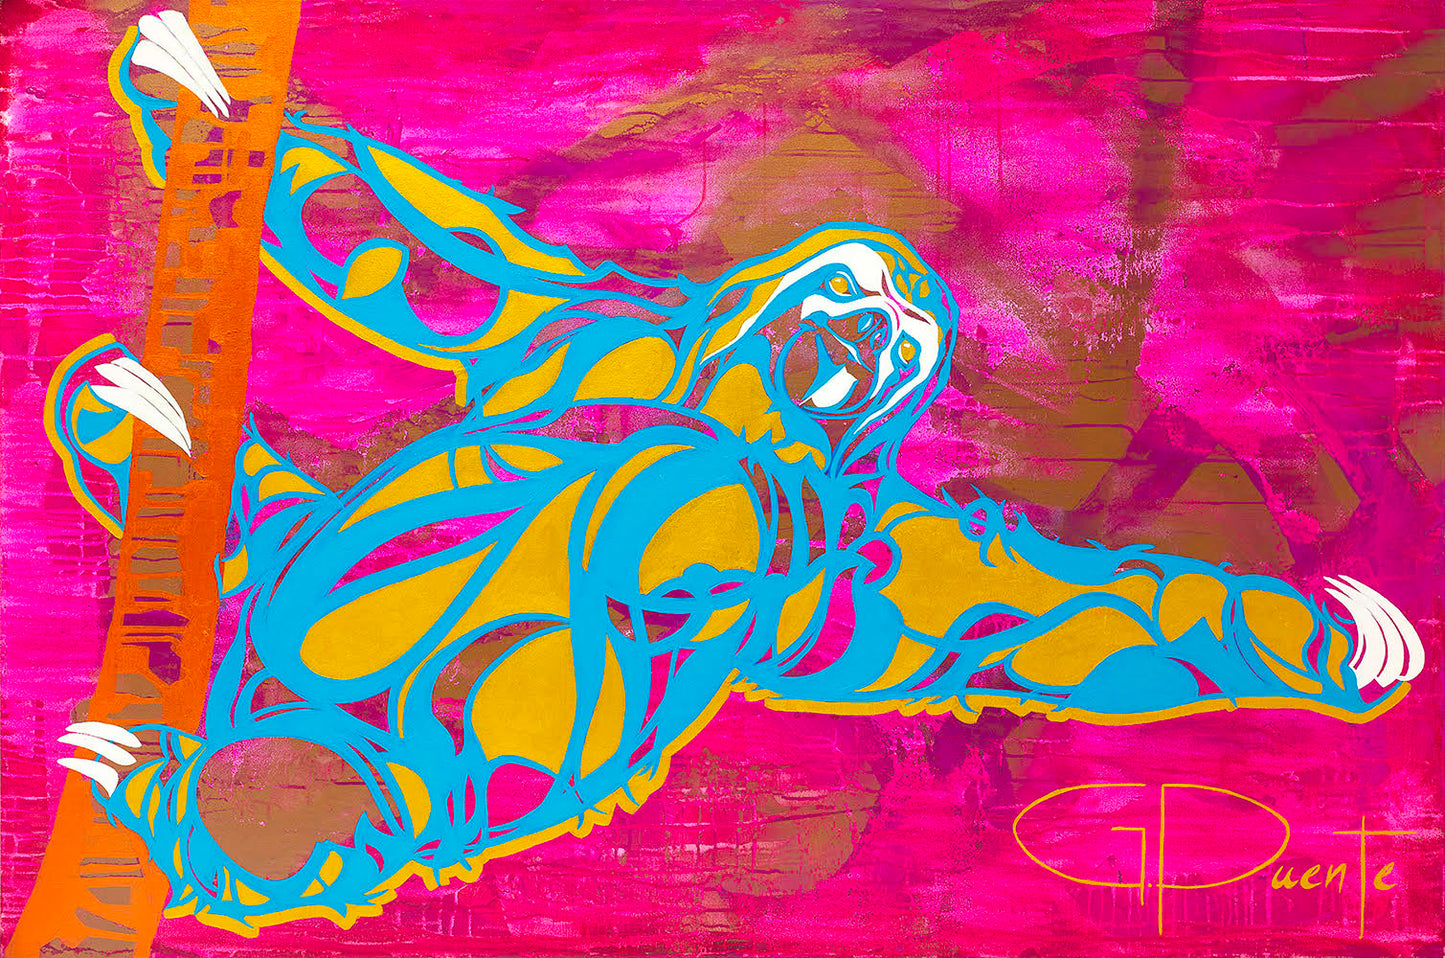 Perezoso Dorado (Golden Sloth) 40"X60" | Acrylic on Canvas